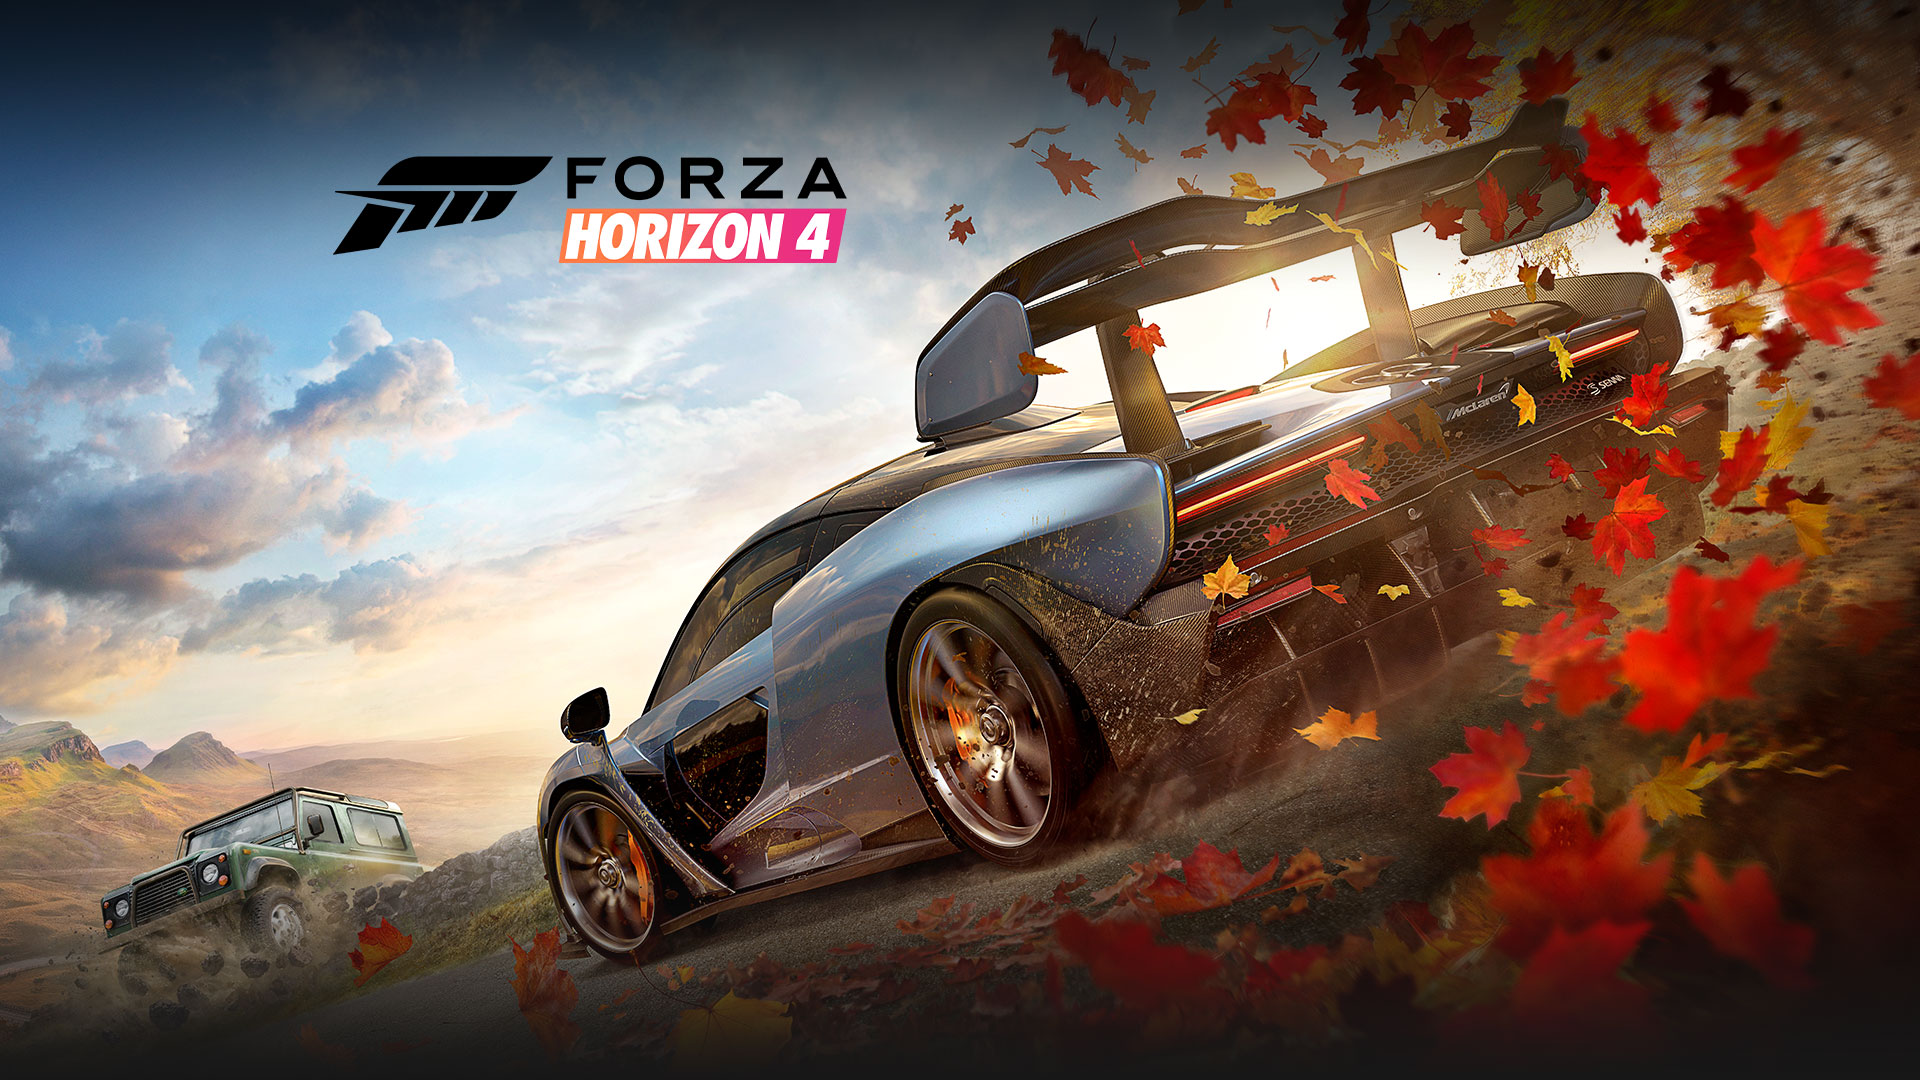 Forza Horizon 4, to biler med blade bag en af dem